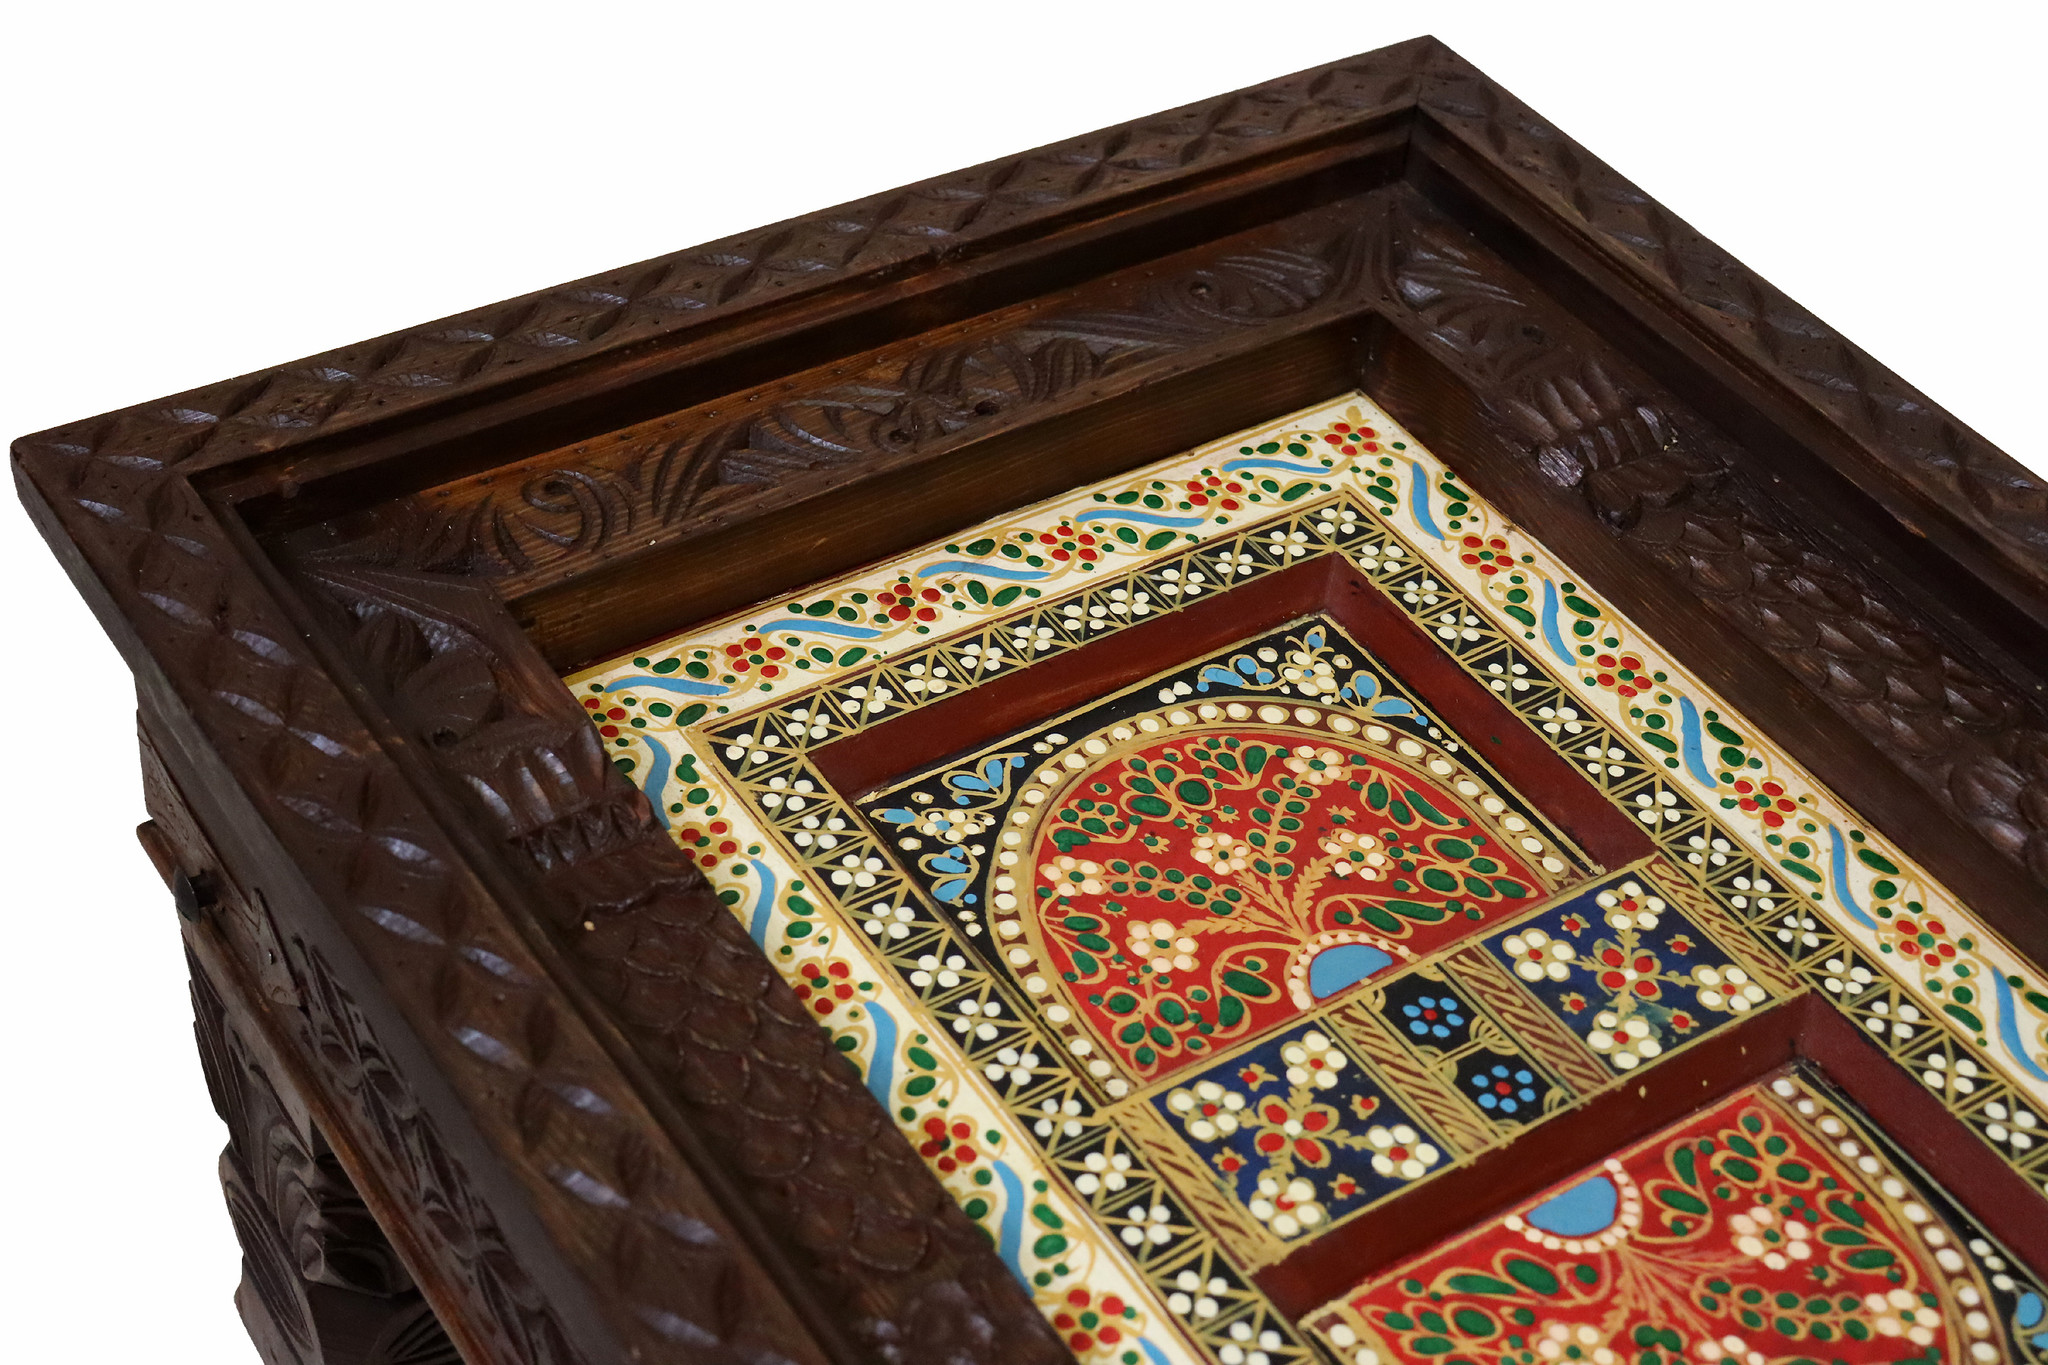 80x60 cm handgeschnitzt massivholz kolonialstil Wohnzimmertisch Tisch Couchtisch aus Afghanistan Nuristan Nr:23-4